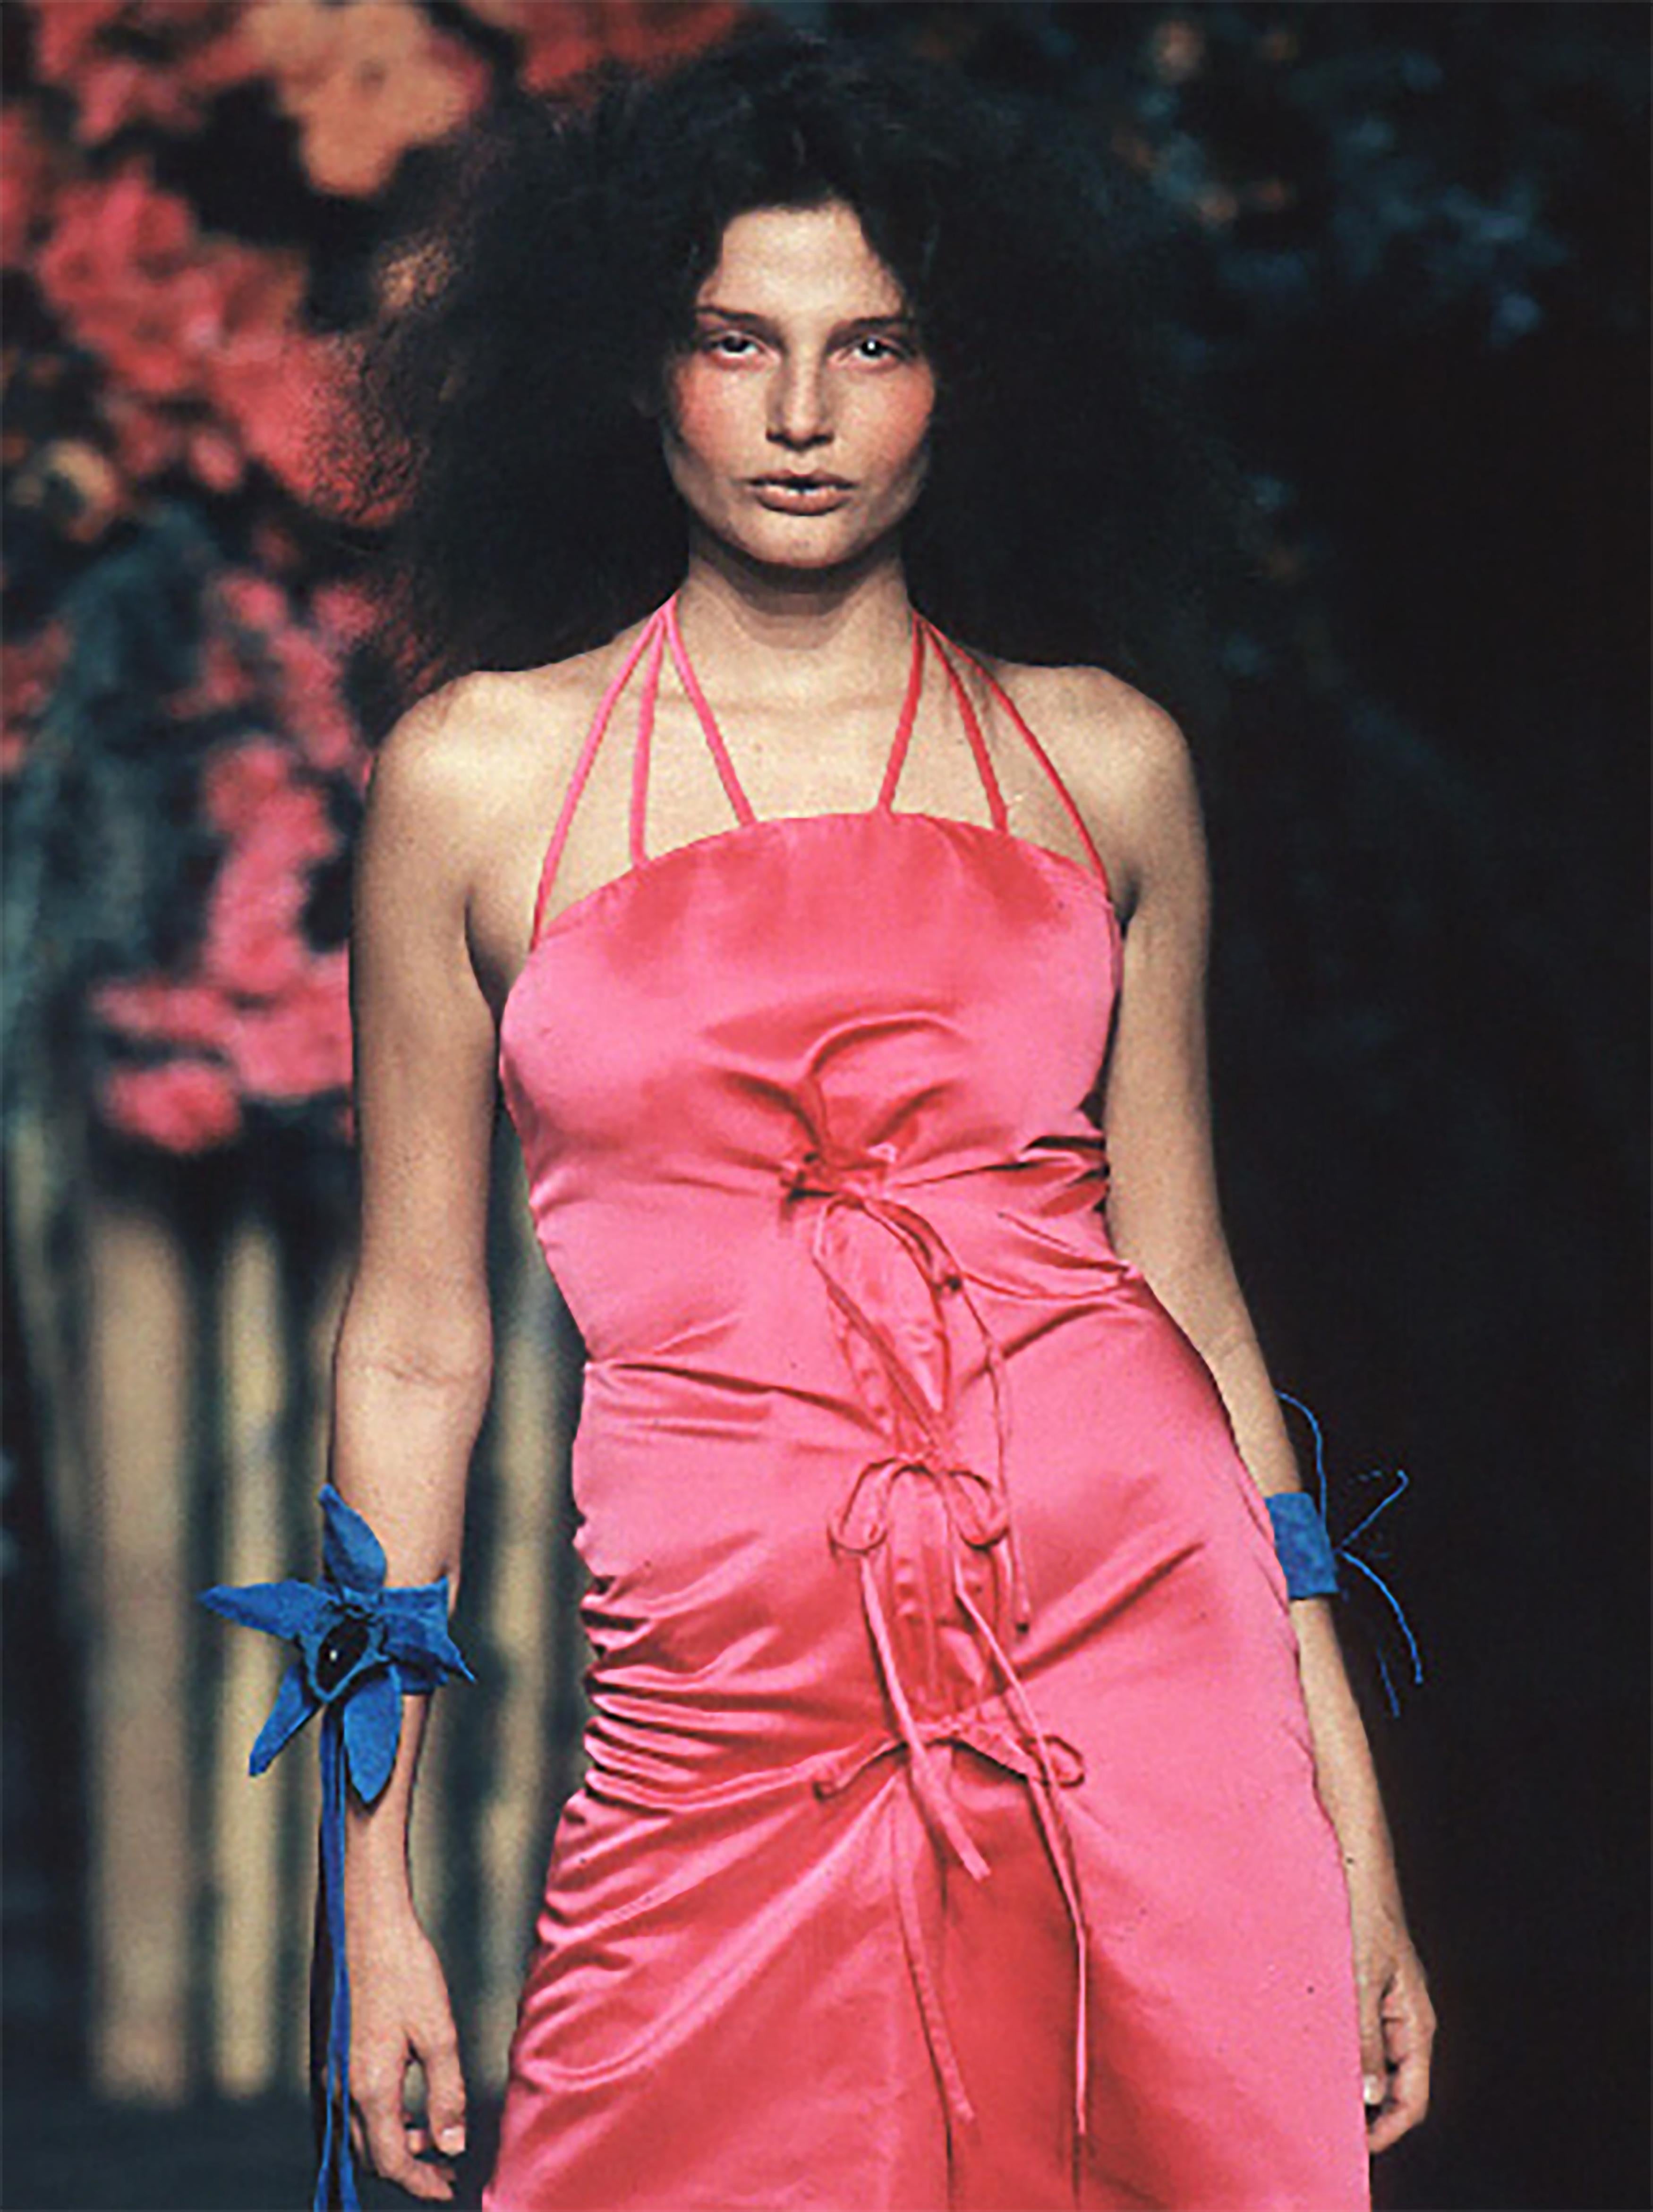 S/S 1999 Vivienne Westwood 'Red Label' robe en soie rose vif avec liens ajustables sur le devant. Robe décolletée avec doubles bretelles qui se clippent sur le devant. Fermeture à glissière latérale cachée. Comme on l'a vu sur le podium en version